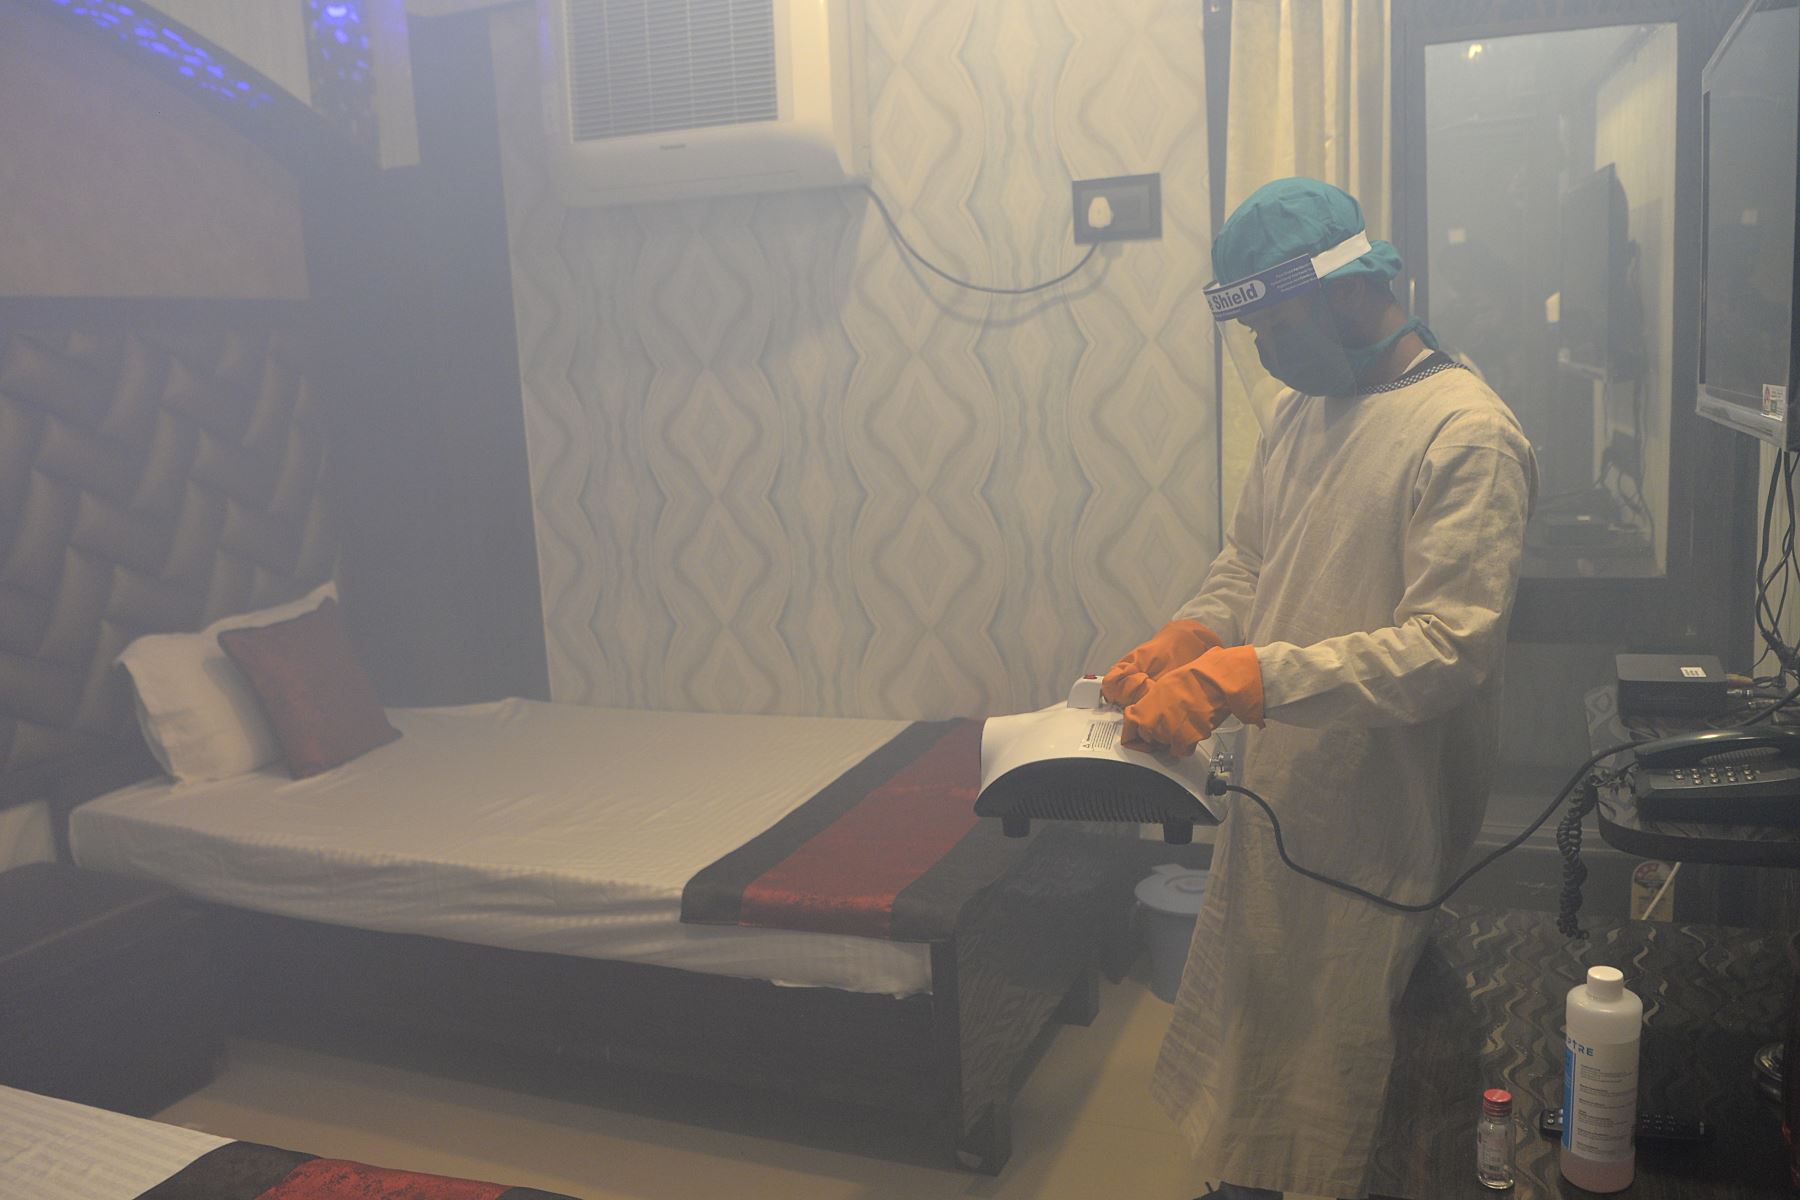 Un empleado de un hotel rocía desinfectante dentro de una habitación para las personas que necesitan someterse a una cuarentena 14 días, en la India. Foto: AFP